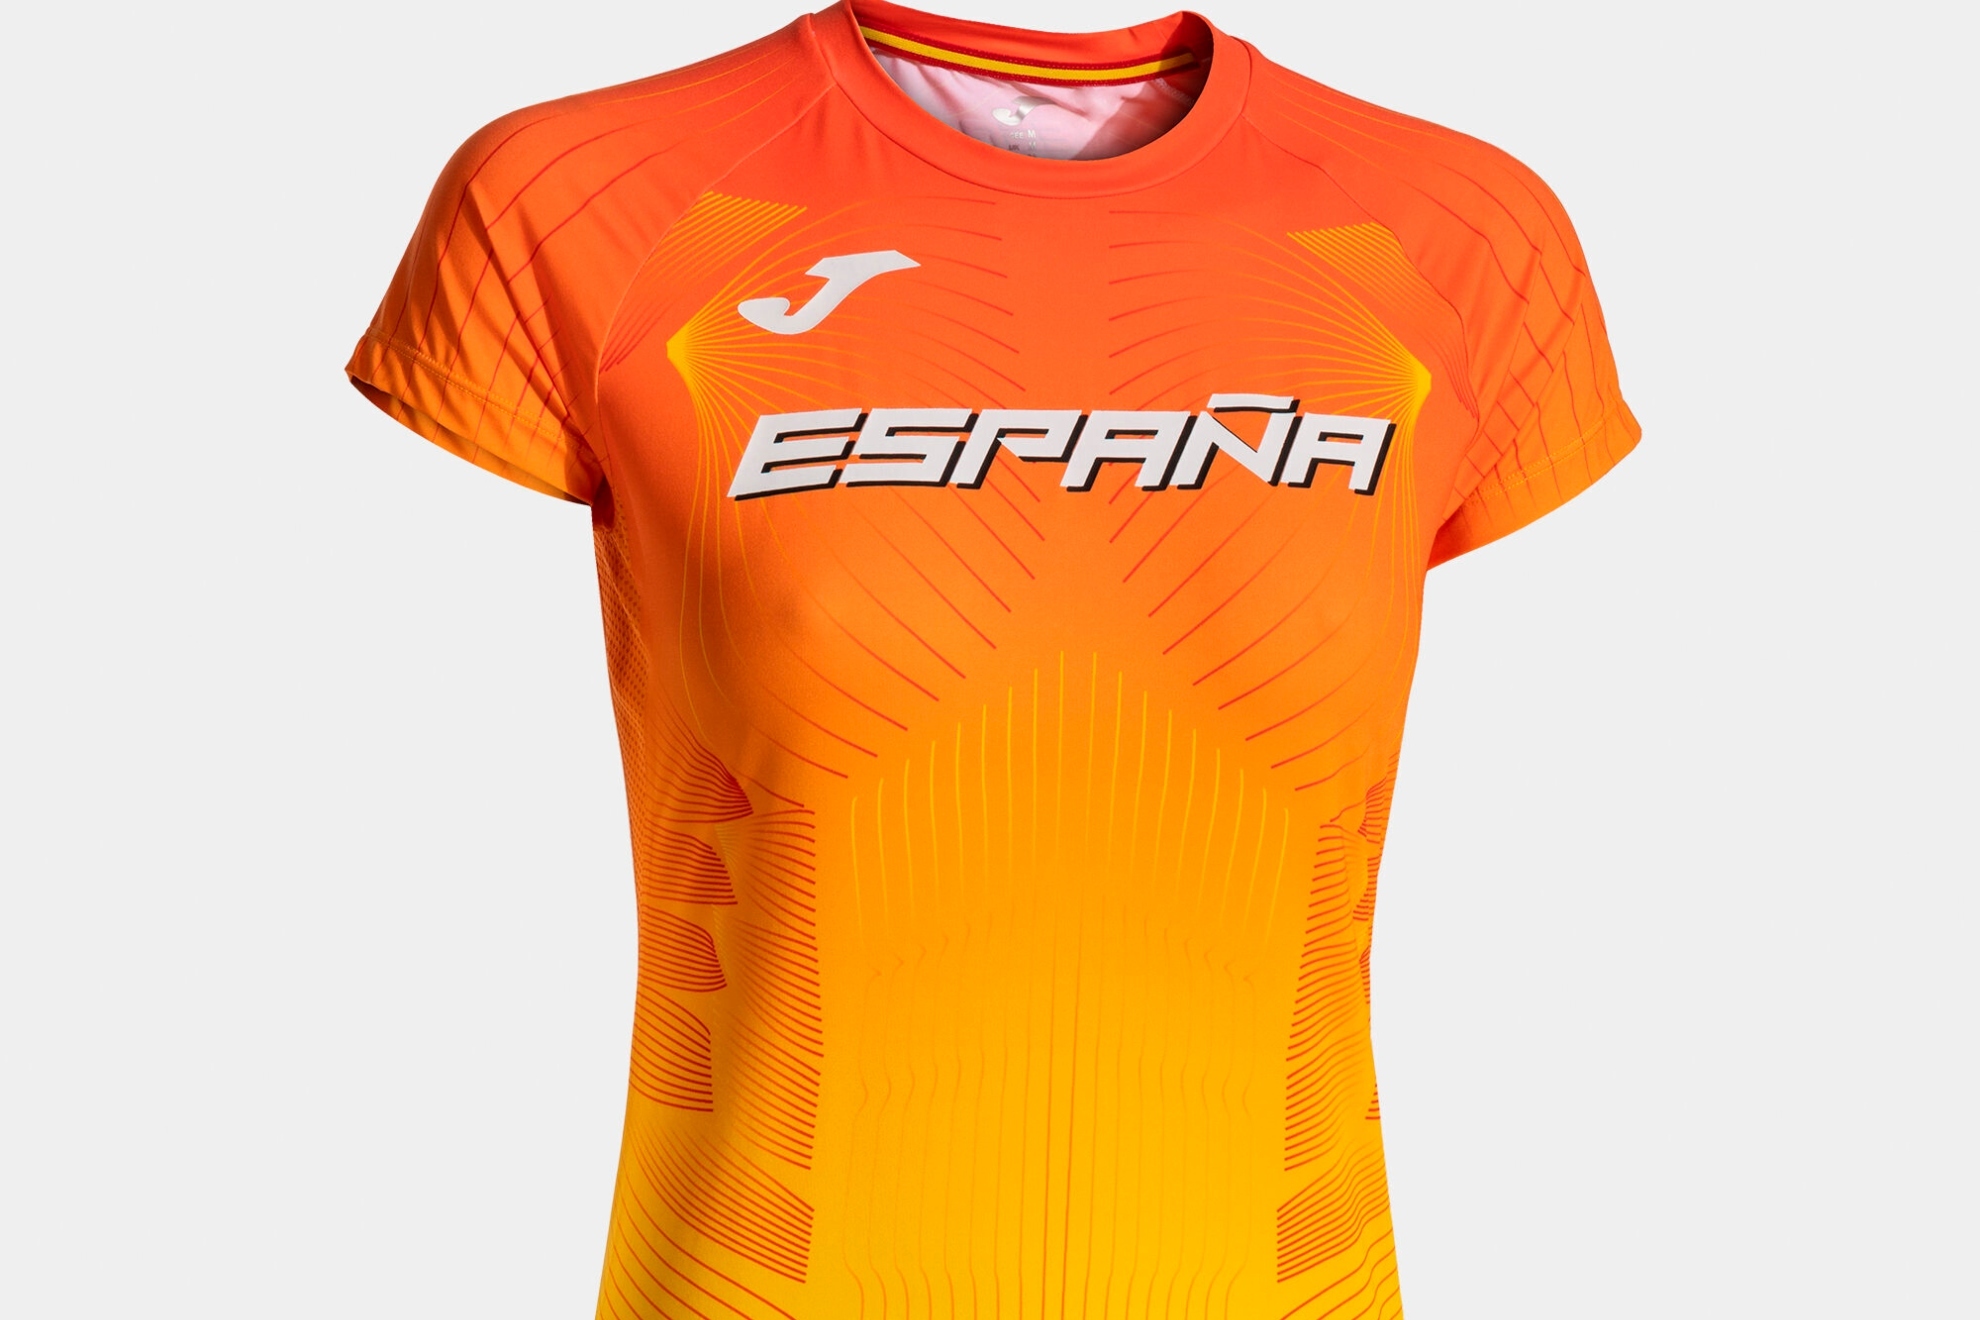 Camiseta de JOMA para el equipo espa�ol de atletismo en el Europeo de Roma y los Juegos de Par�s.